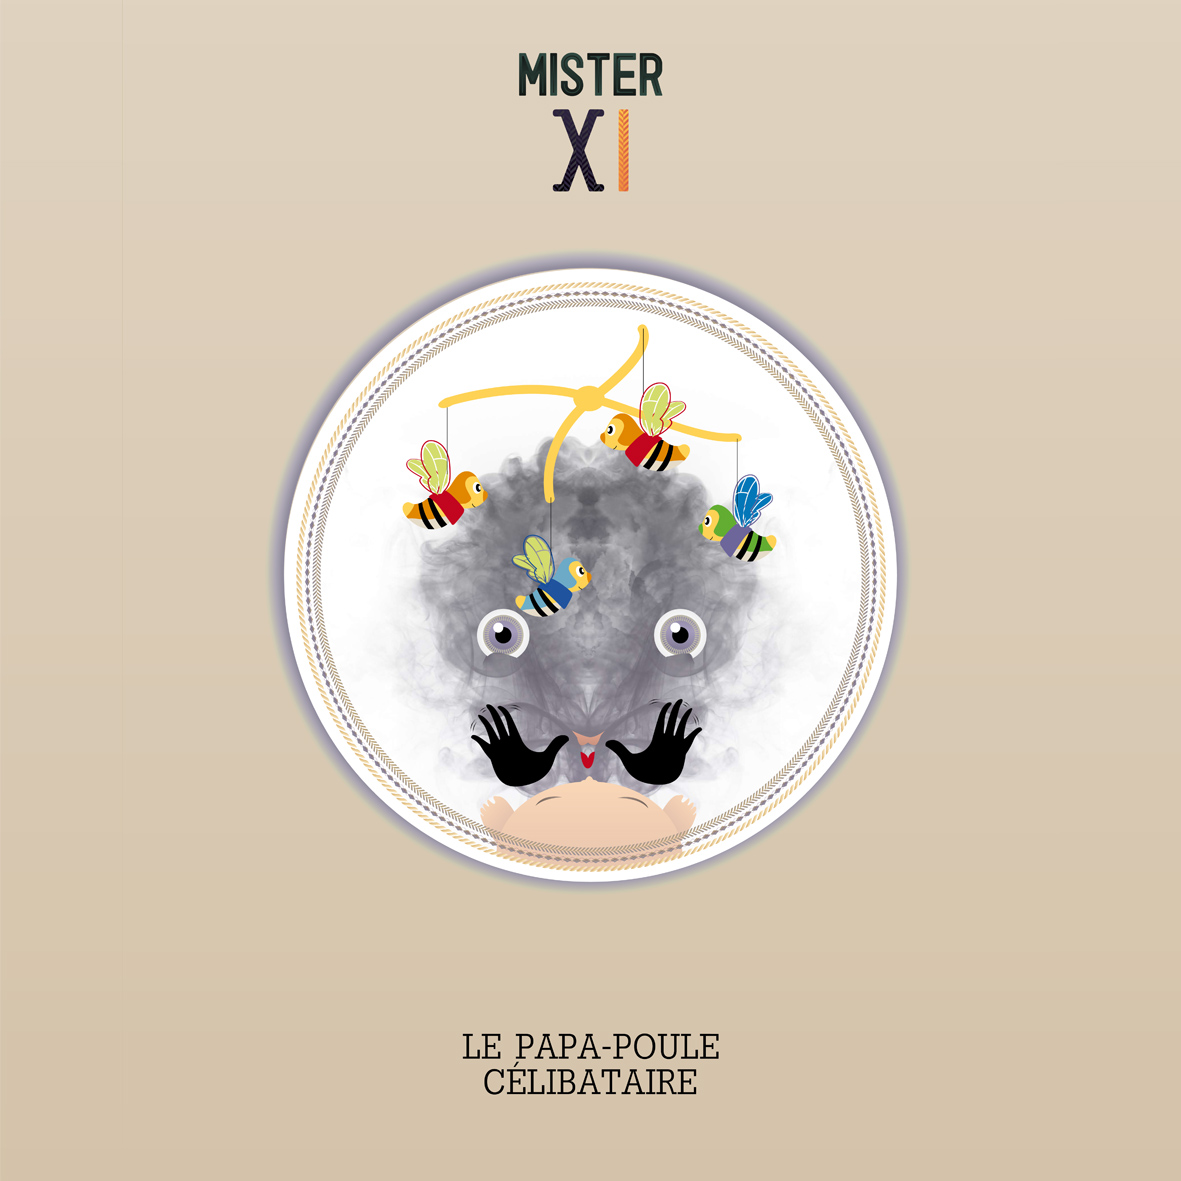 Mister X I